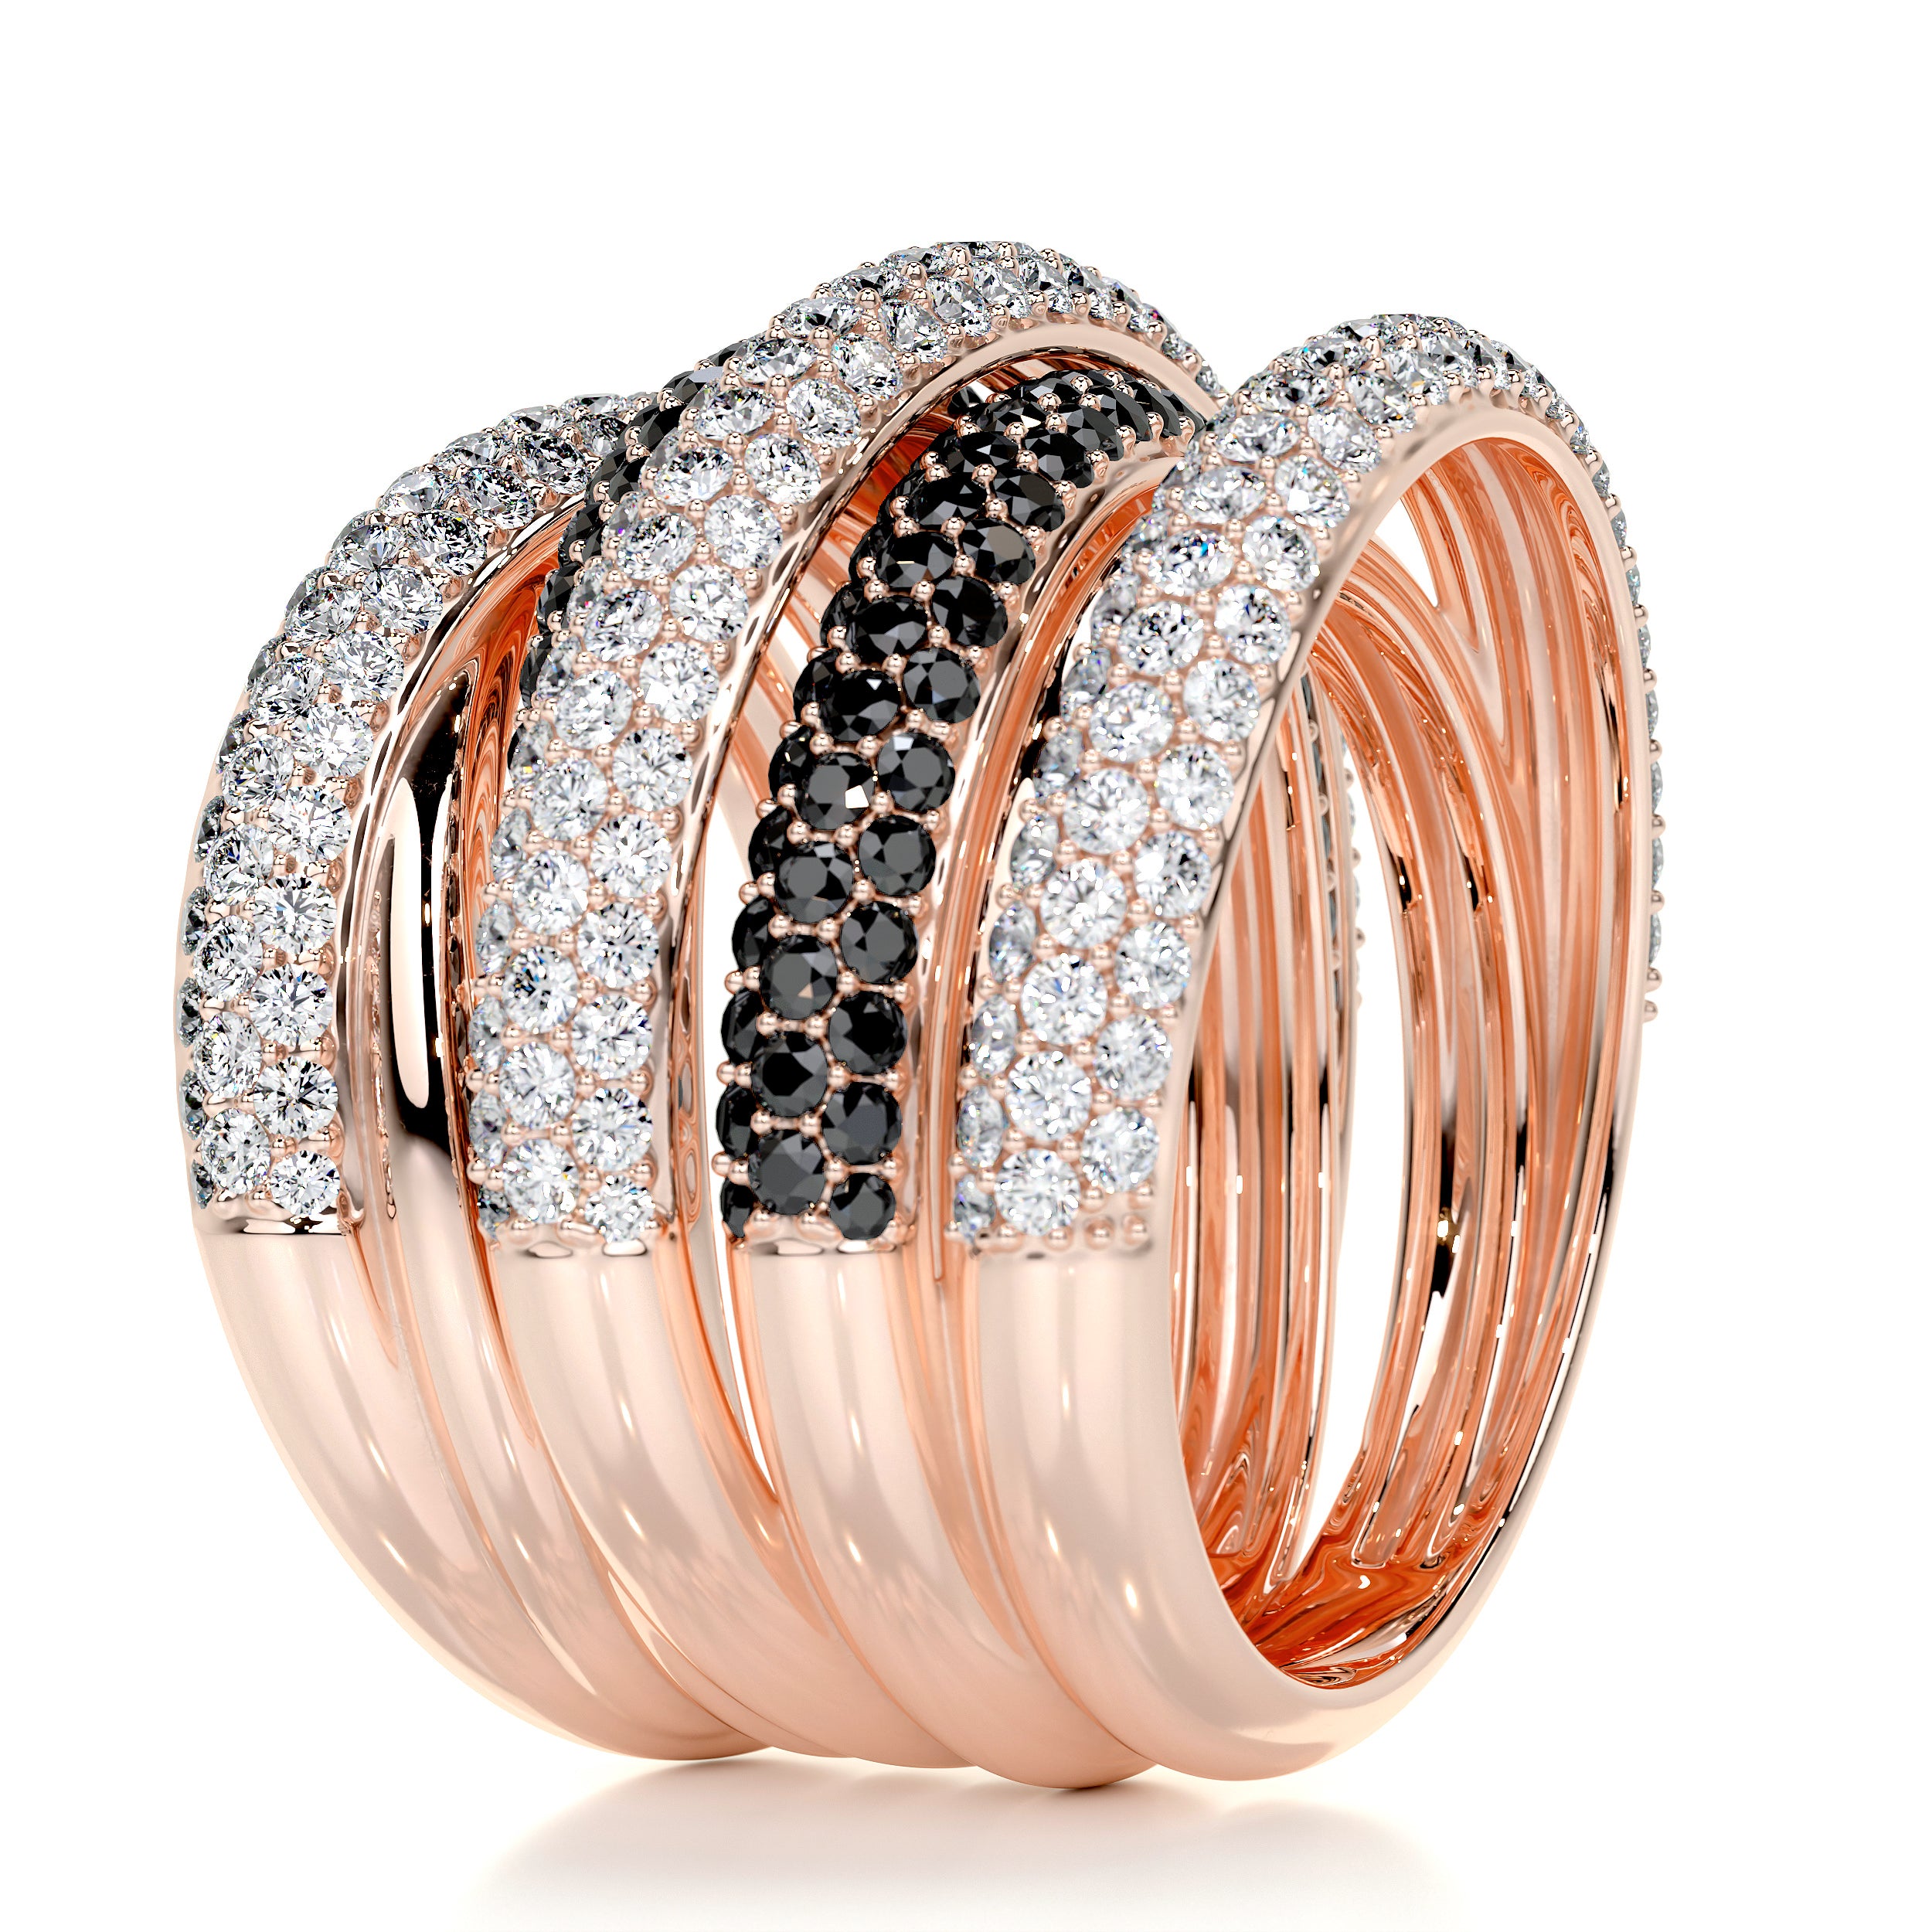 Aurora Black & White Diamond Wedding Ring   (3 Carat) -14K Rose Gold